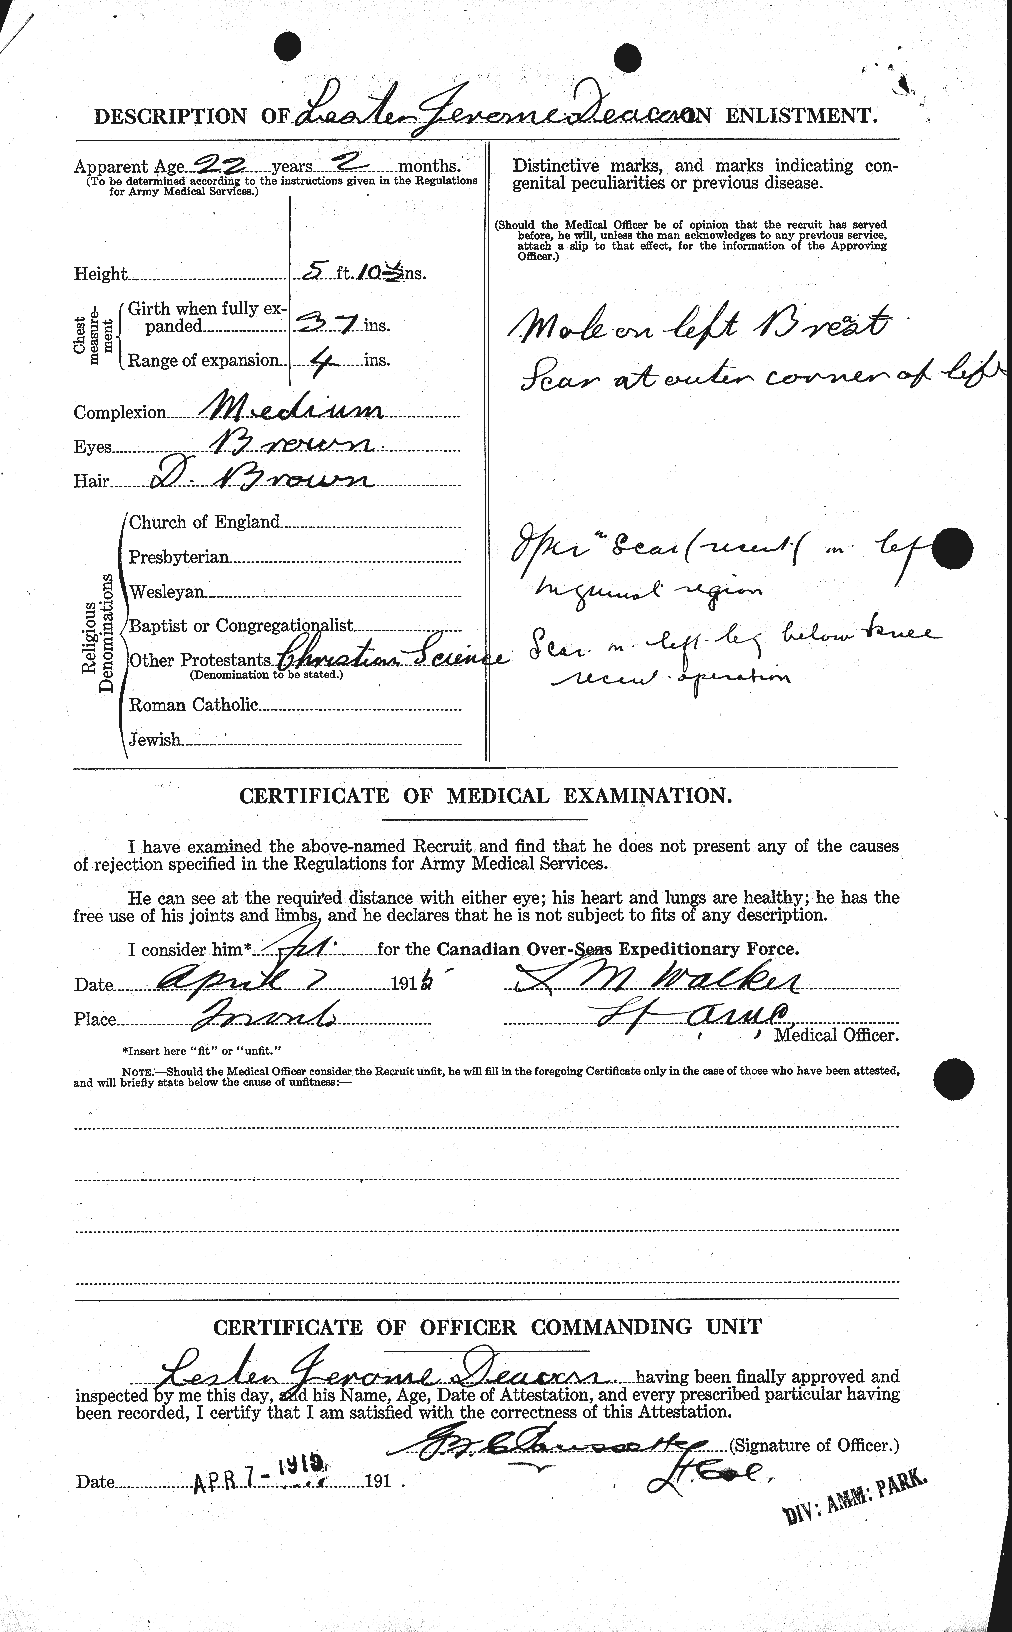 Dossiers du Personnel de la Première Guerre mondiale - CEC 283715b